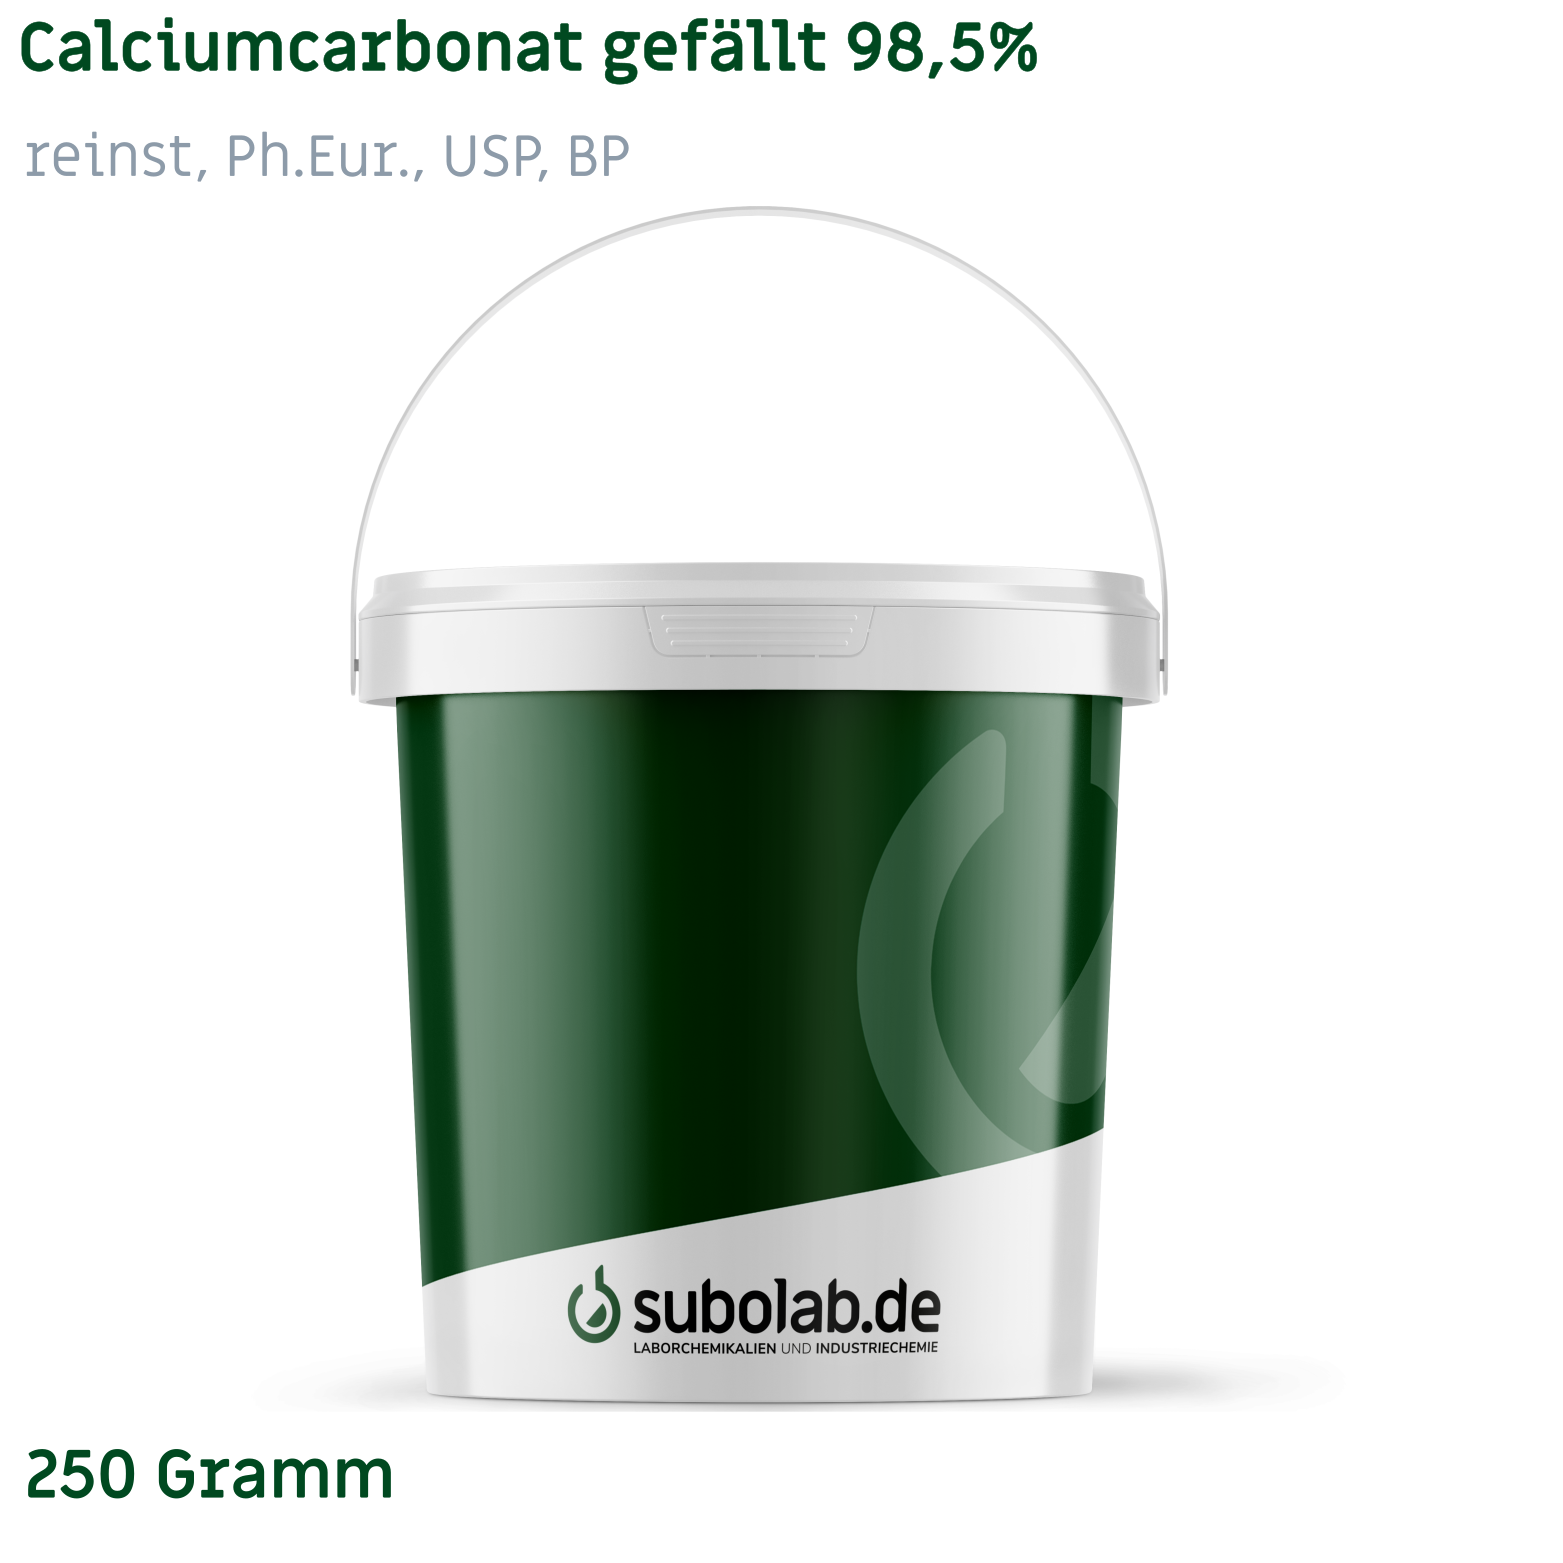 Bild von Calciumcarbonat gefällt 98,5% reinst, Ph.Eur., USP, BP (250 Gramm)